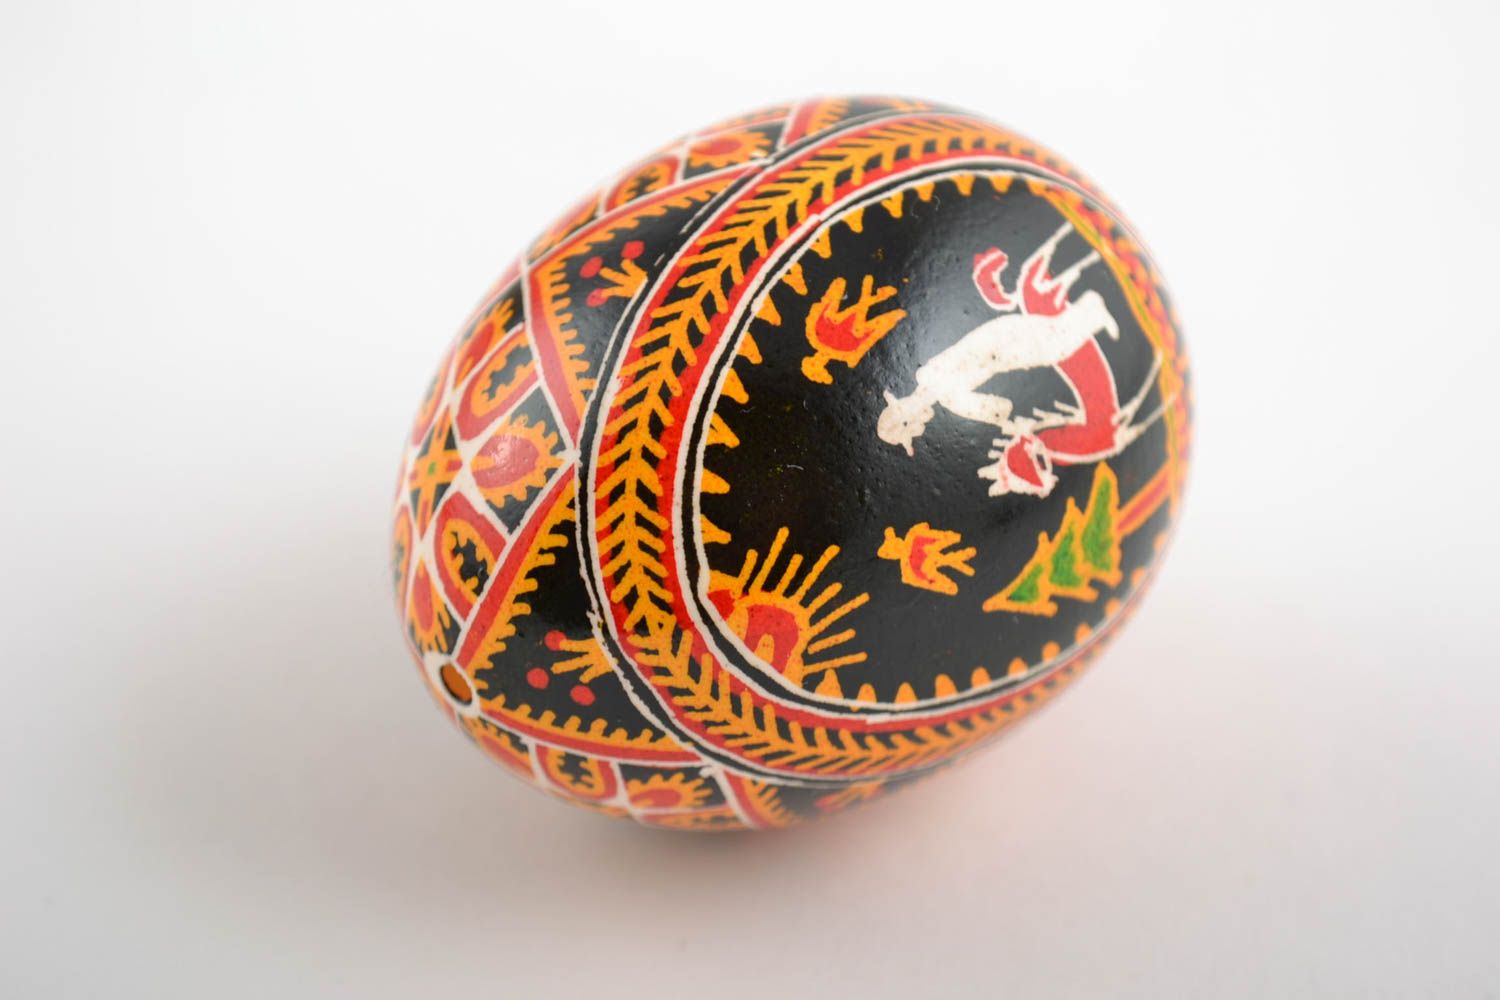 Расписное пасхальное яйцо с орнаментом подарок красивое необычное ручной работы фото 4